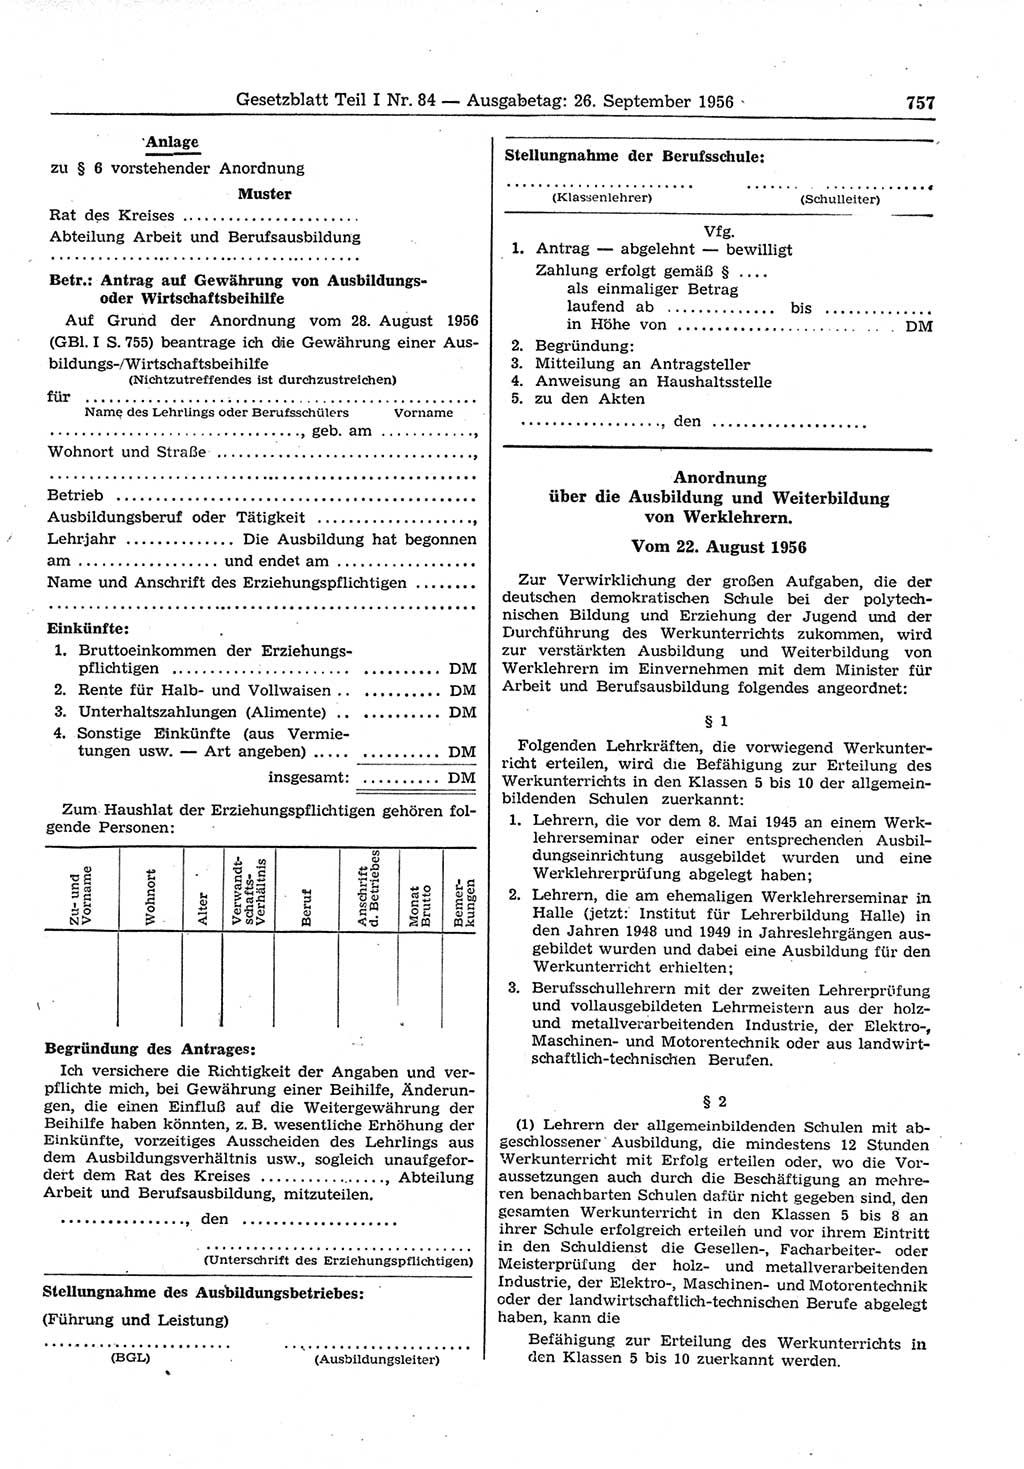 Gesetzblatt (GBl.) der Deutschen Demokratischen Republik (DDR) Teil Ⅰ 1956, Seite 757 (GBl. DDR Ⅰ 1956, S. 757)